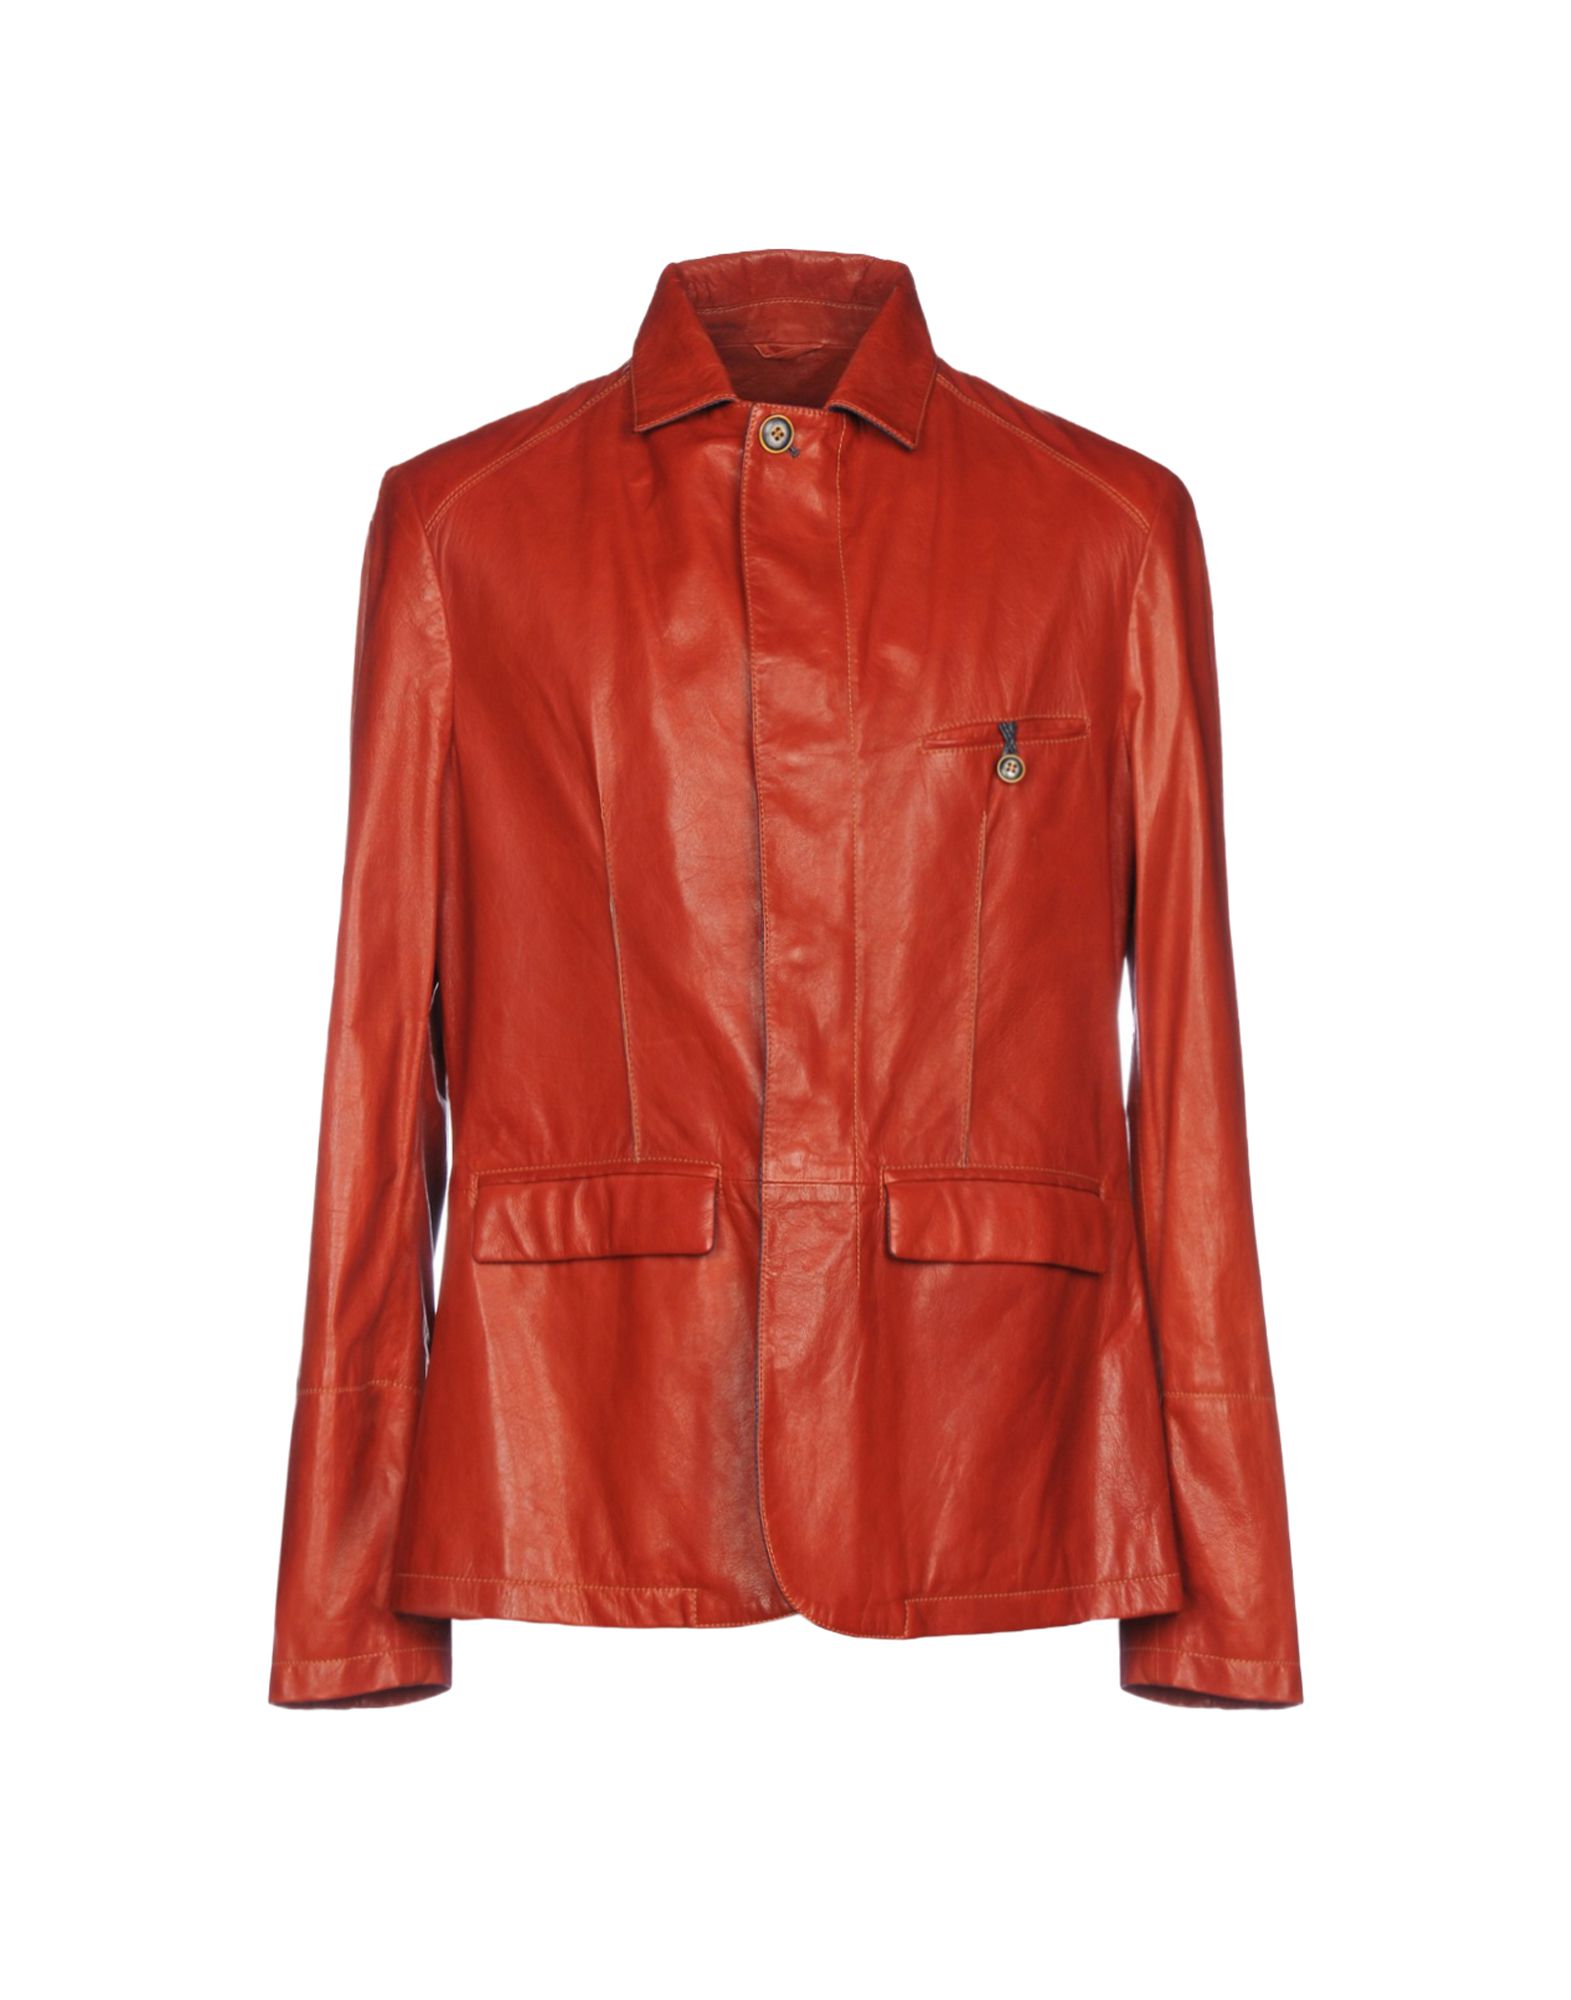 《送料無料》LATINI FINEST LEATHER メンズ テーラードジャケット 赤茶色 50 革 100%